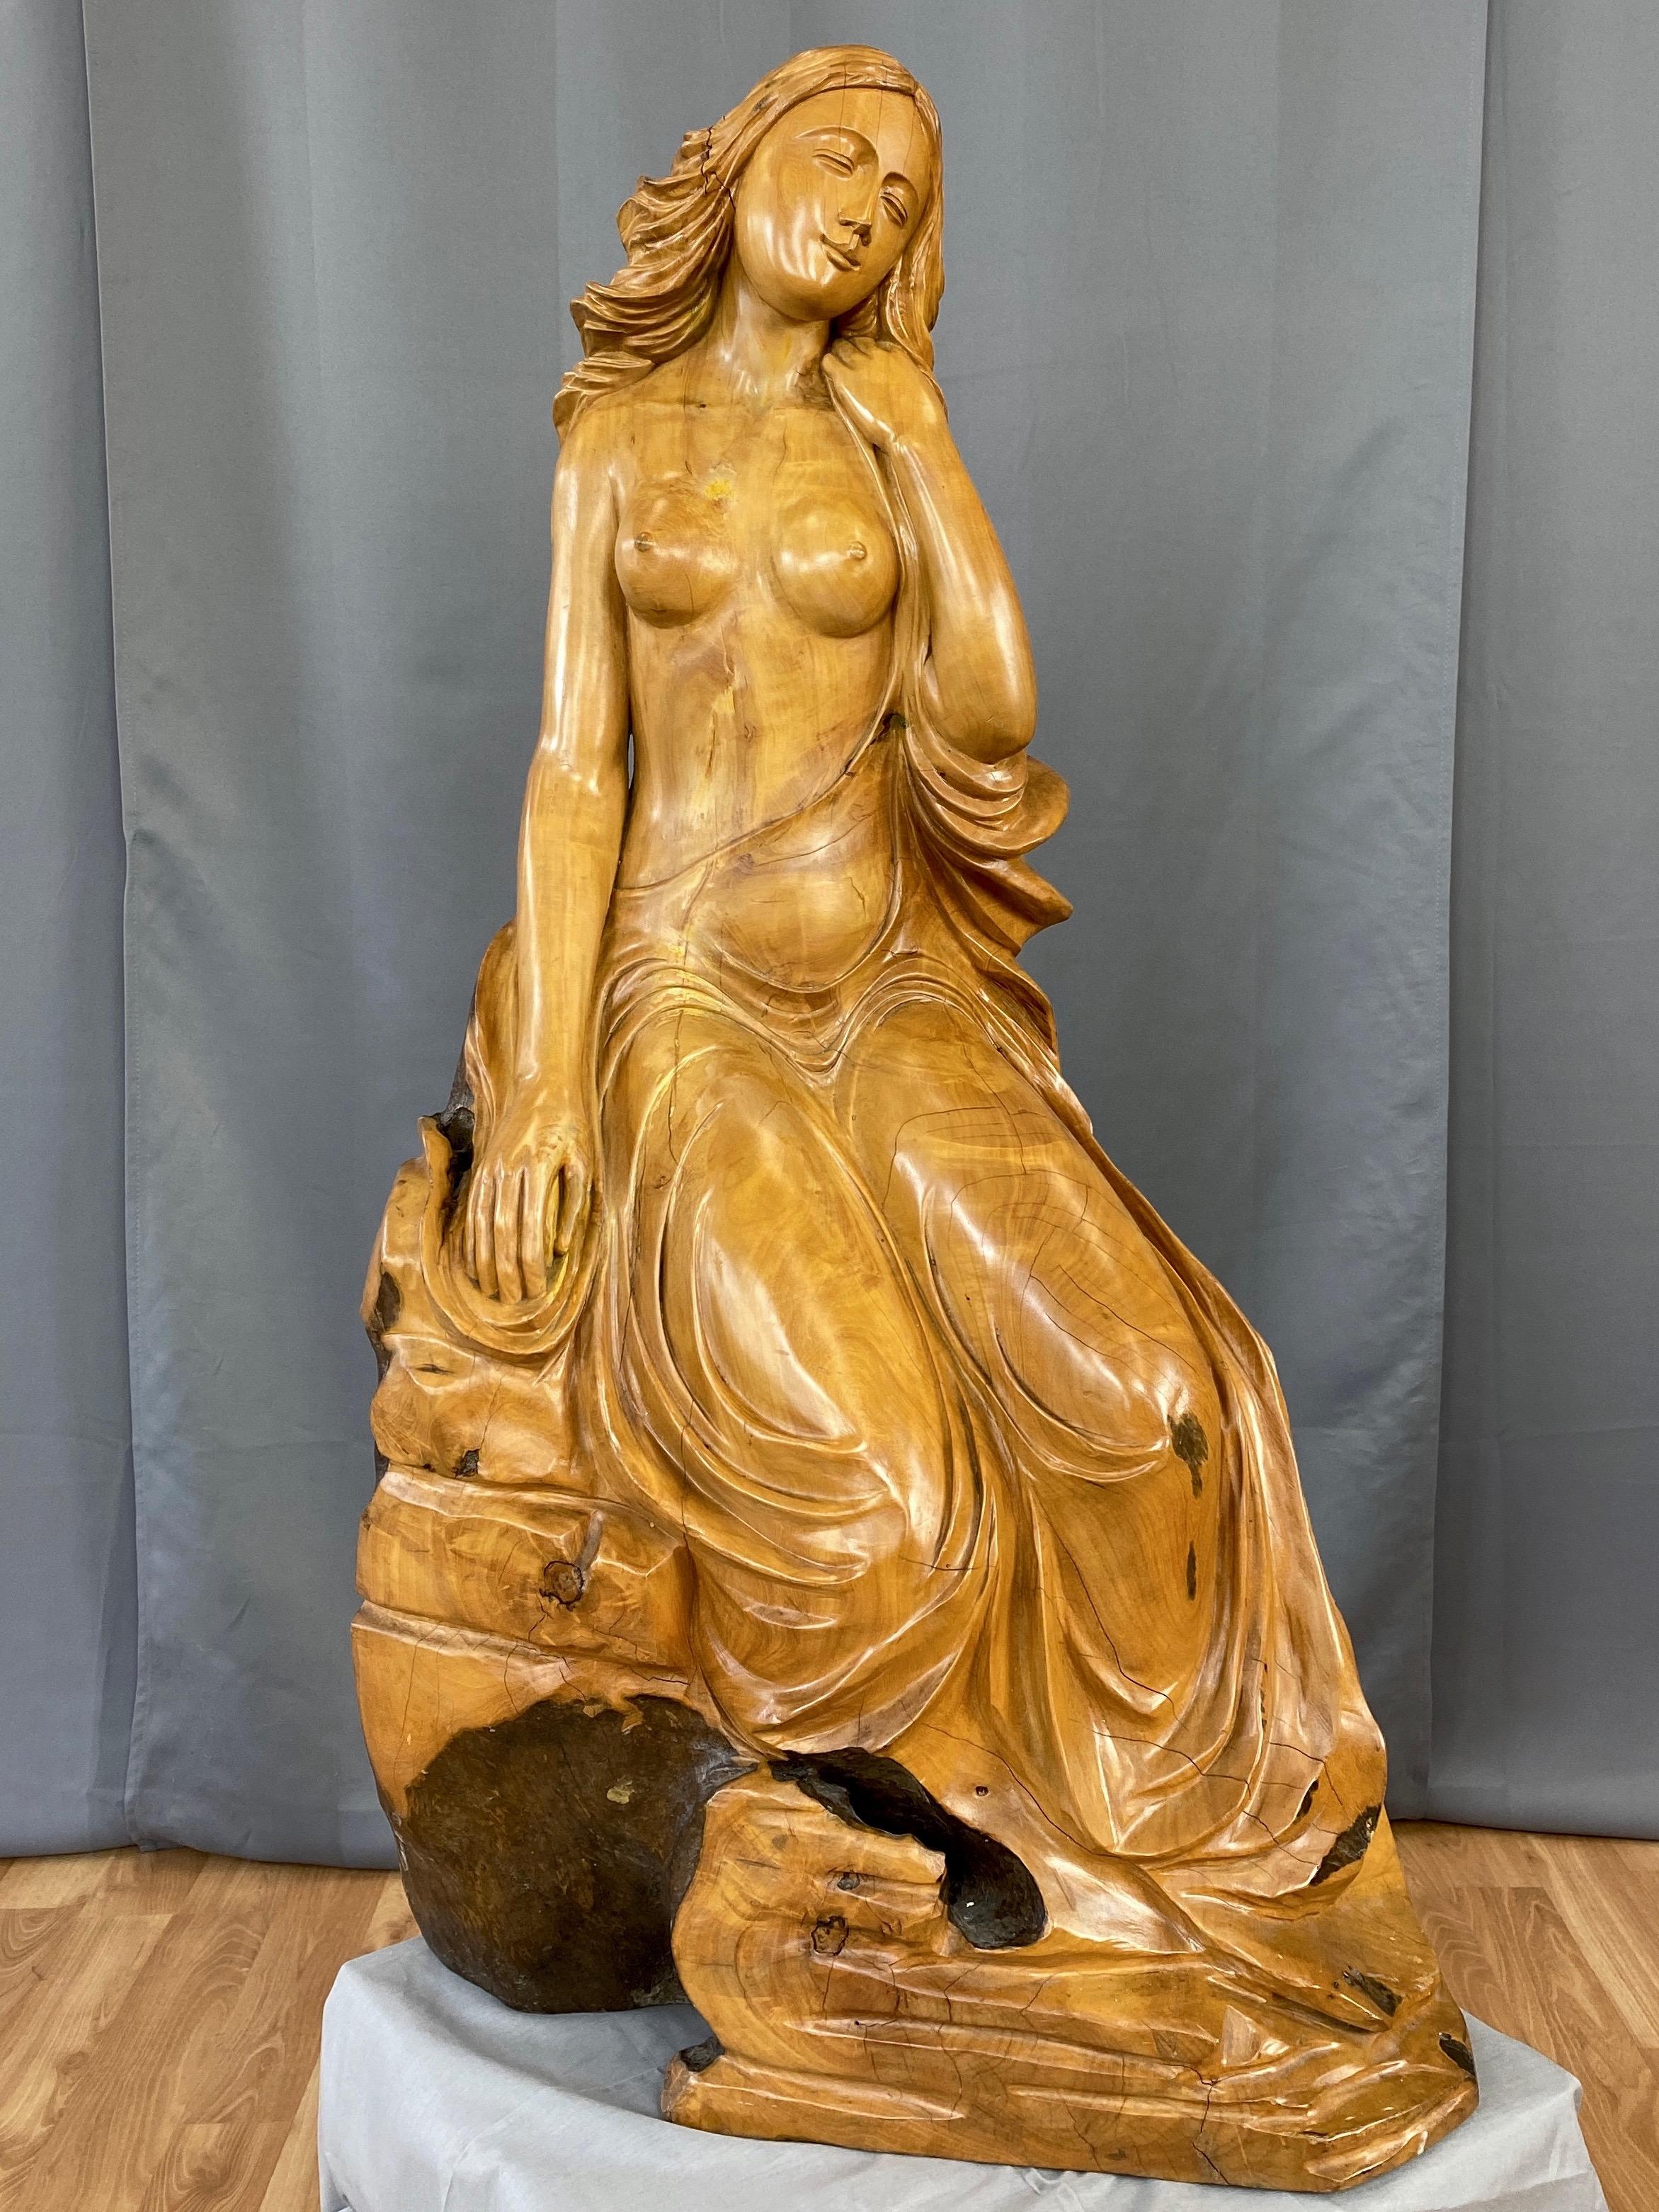 Ein beeindruckend großer und auffallend schöner weiblicher Halbakt, der stark an Sandro Botticellis 